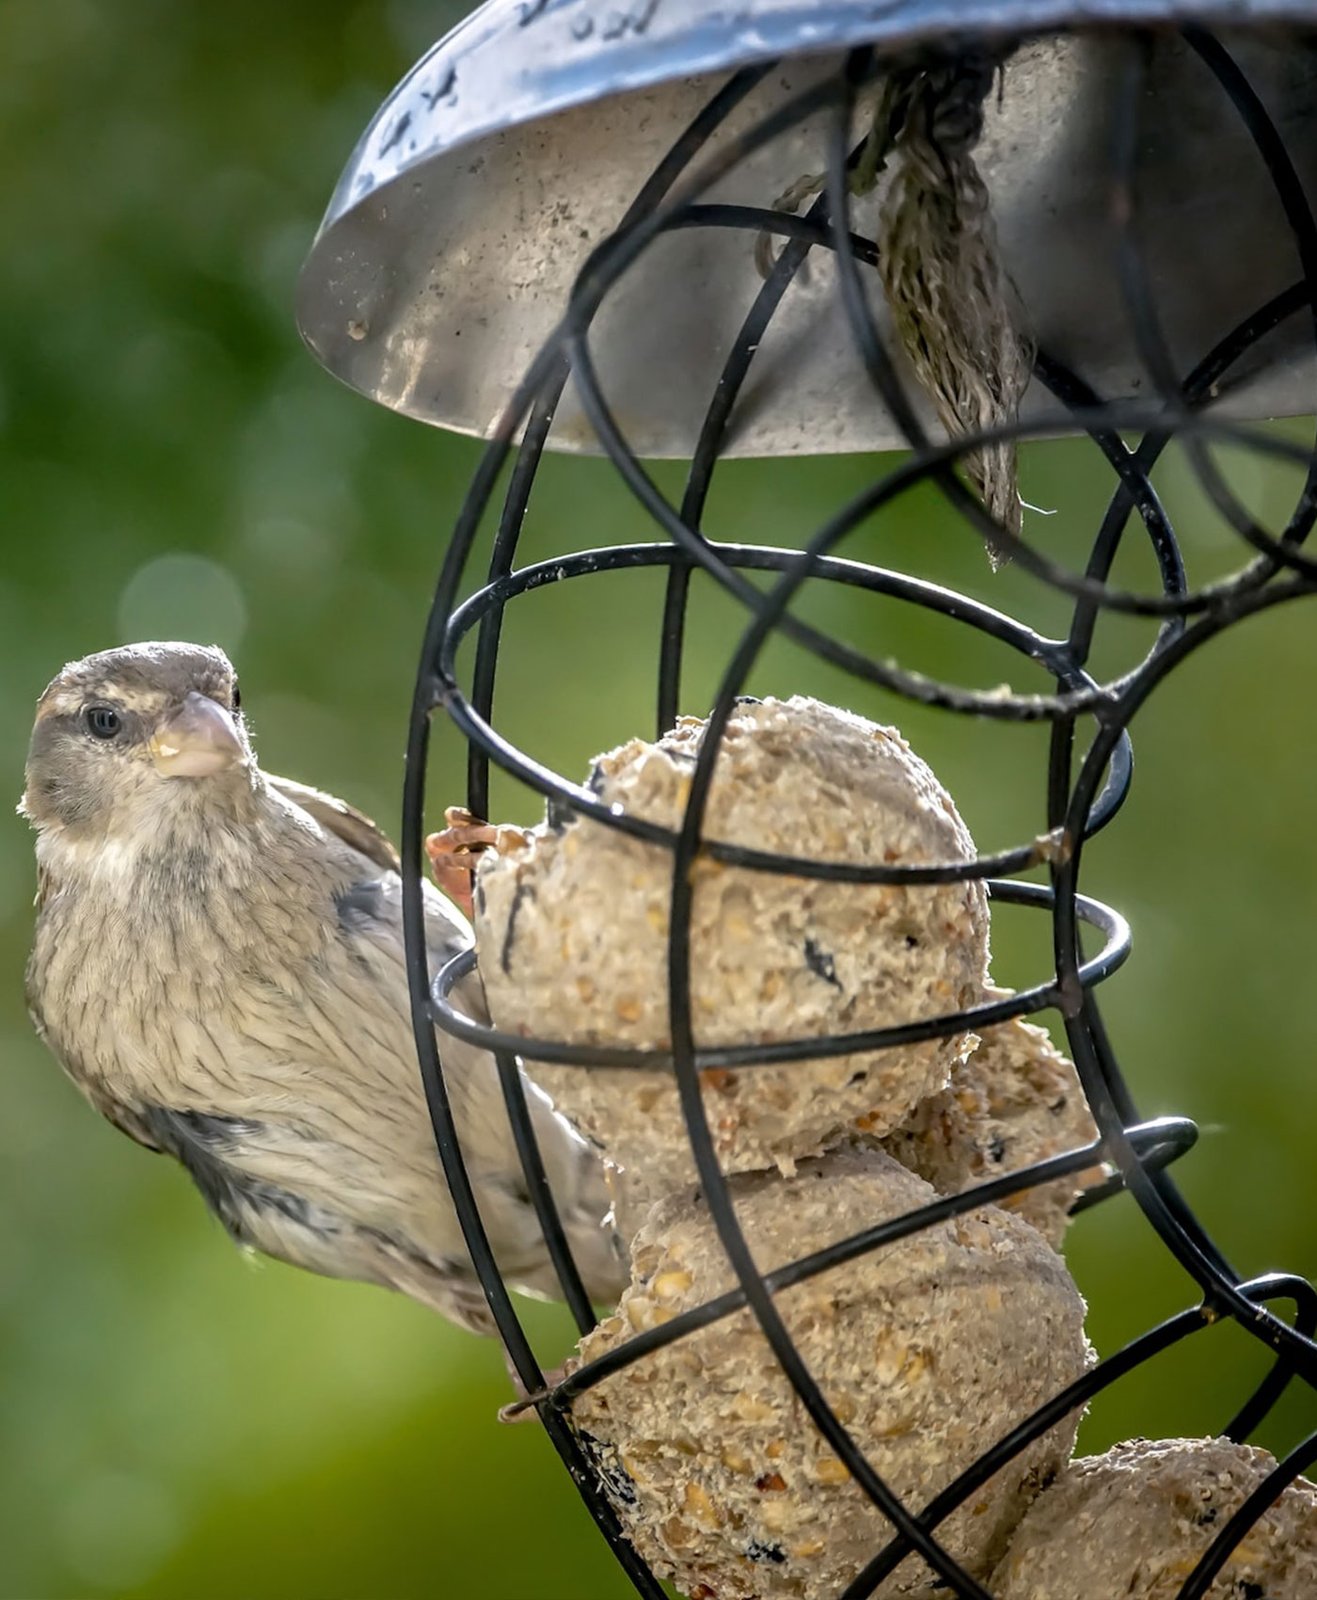 Un oiseau déguste une boule de graisse sur un mangeoire